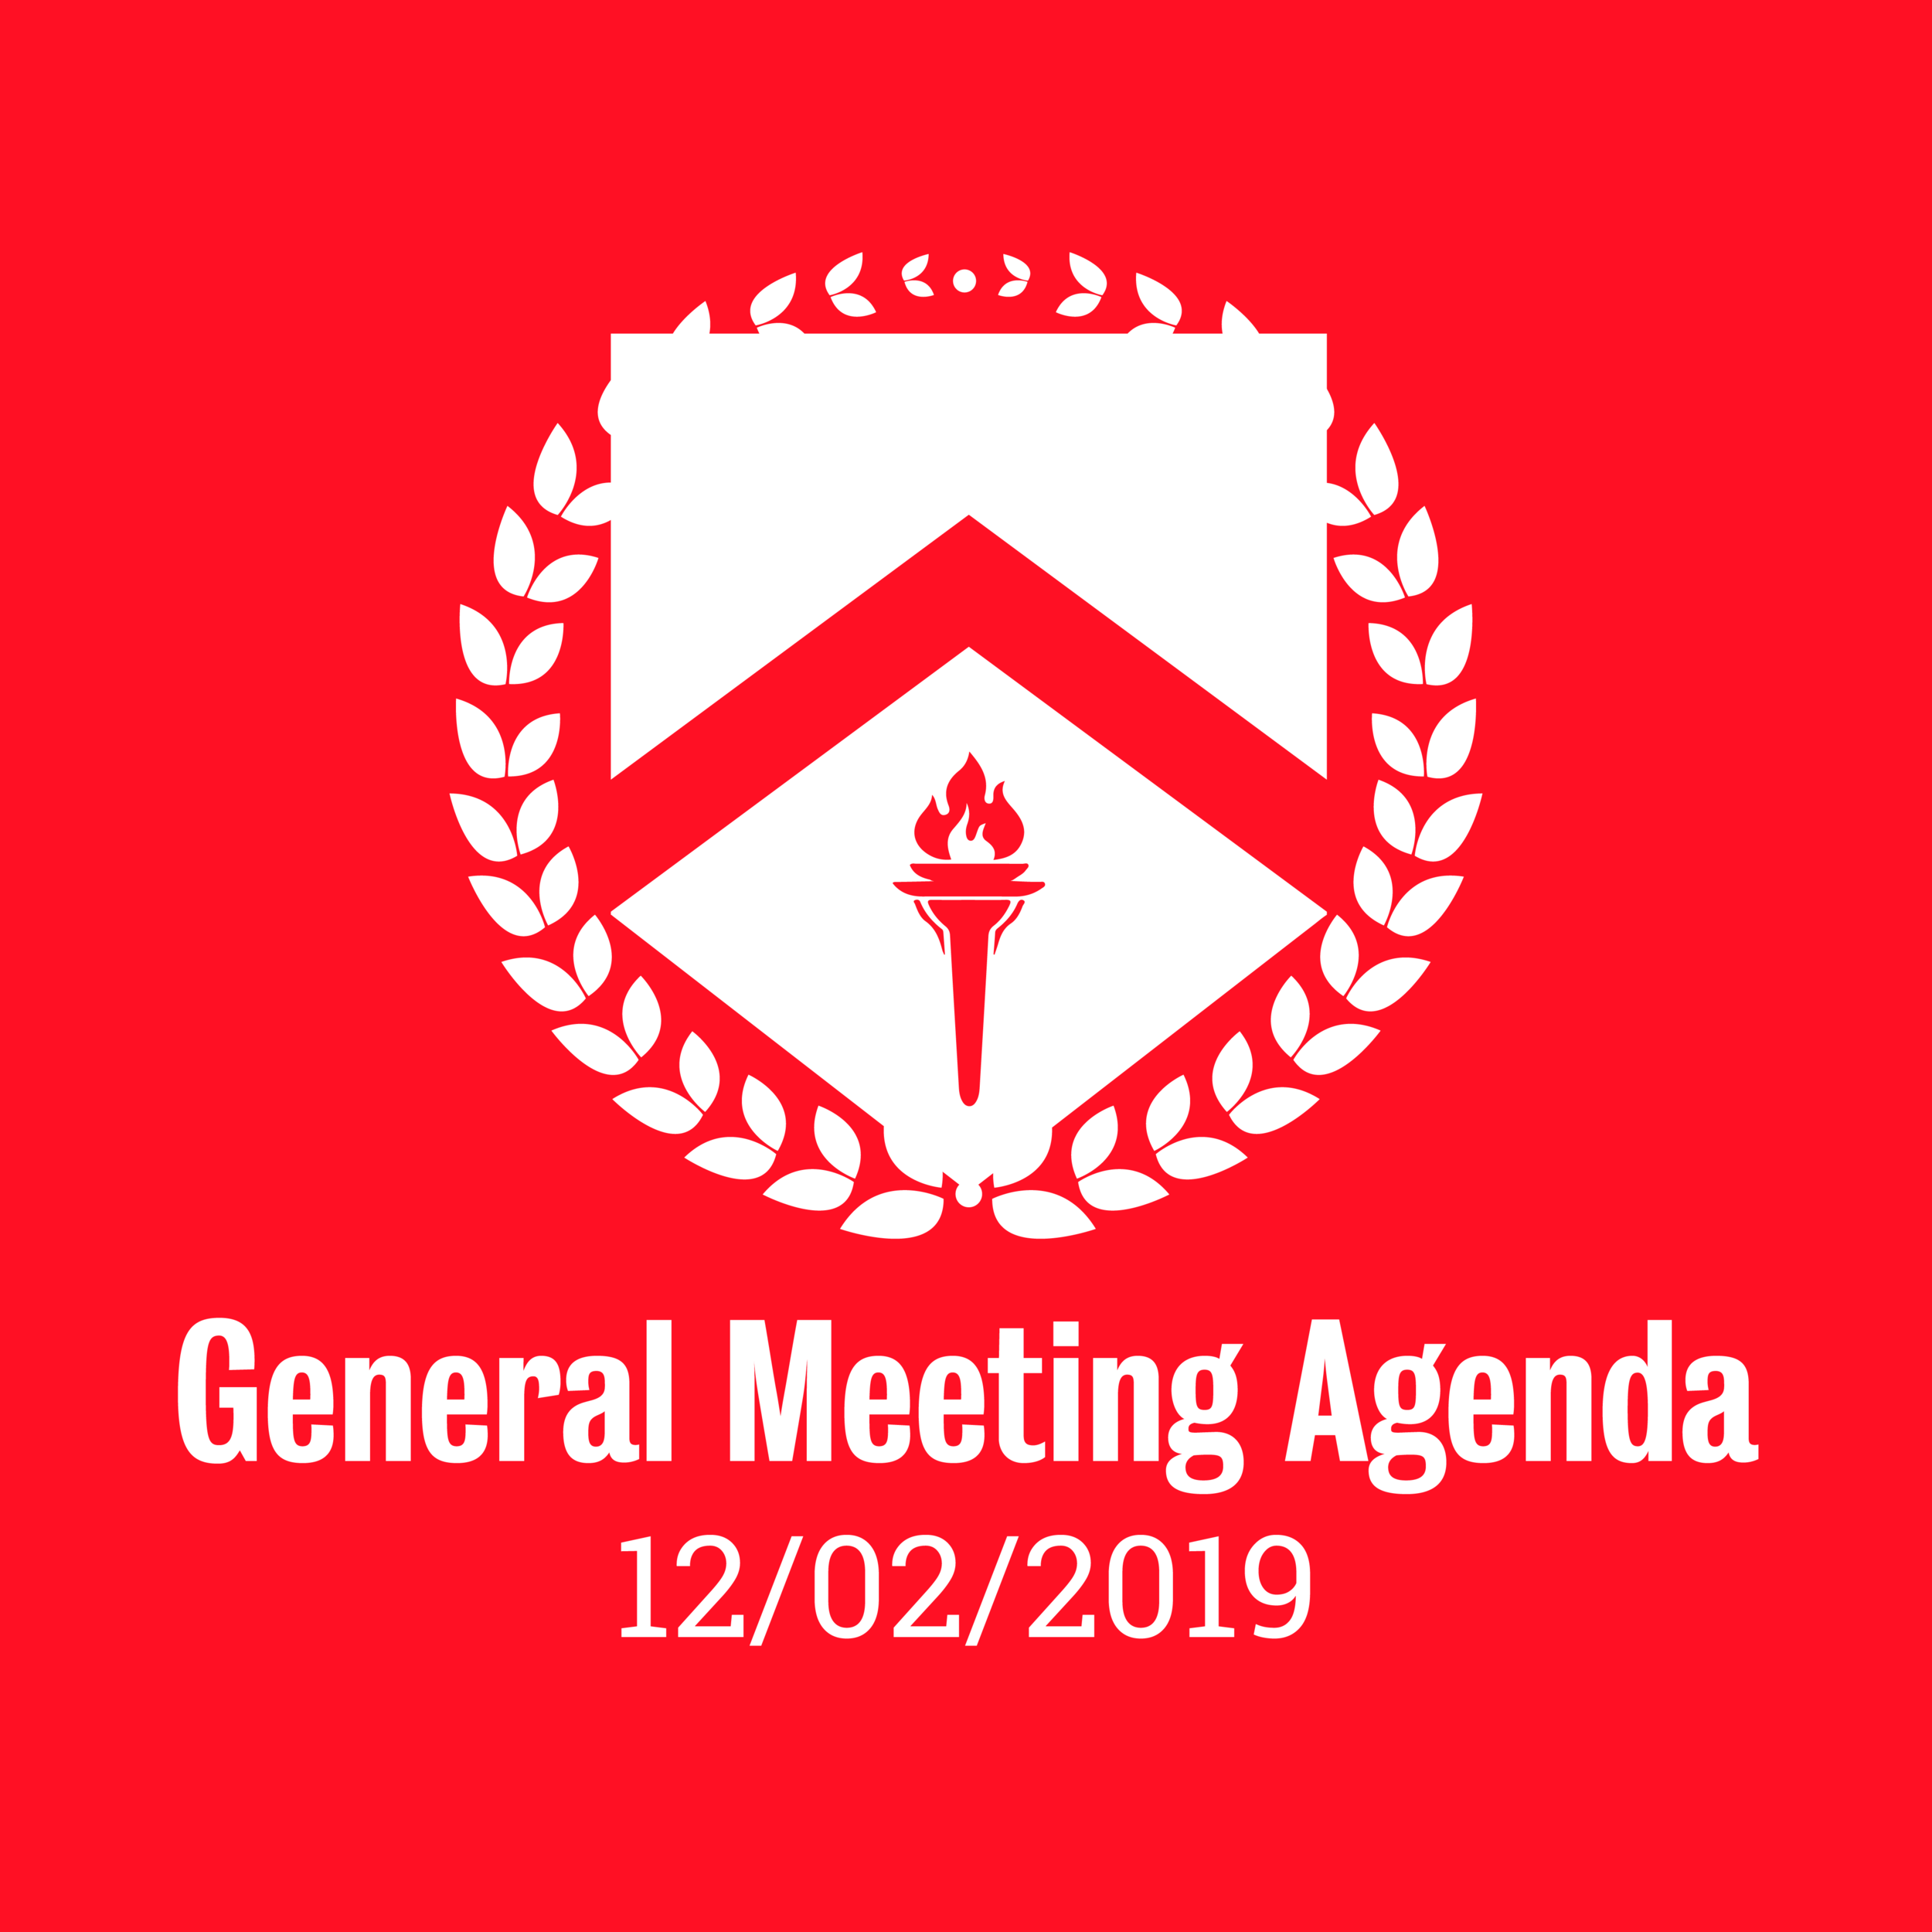 General Meeting Agenda 12/02/2019